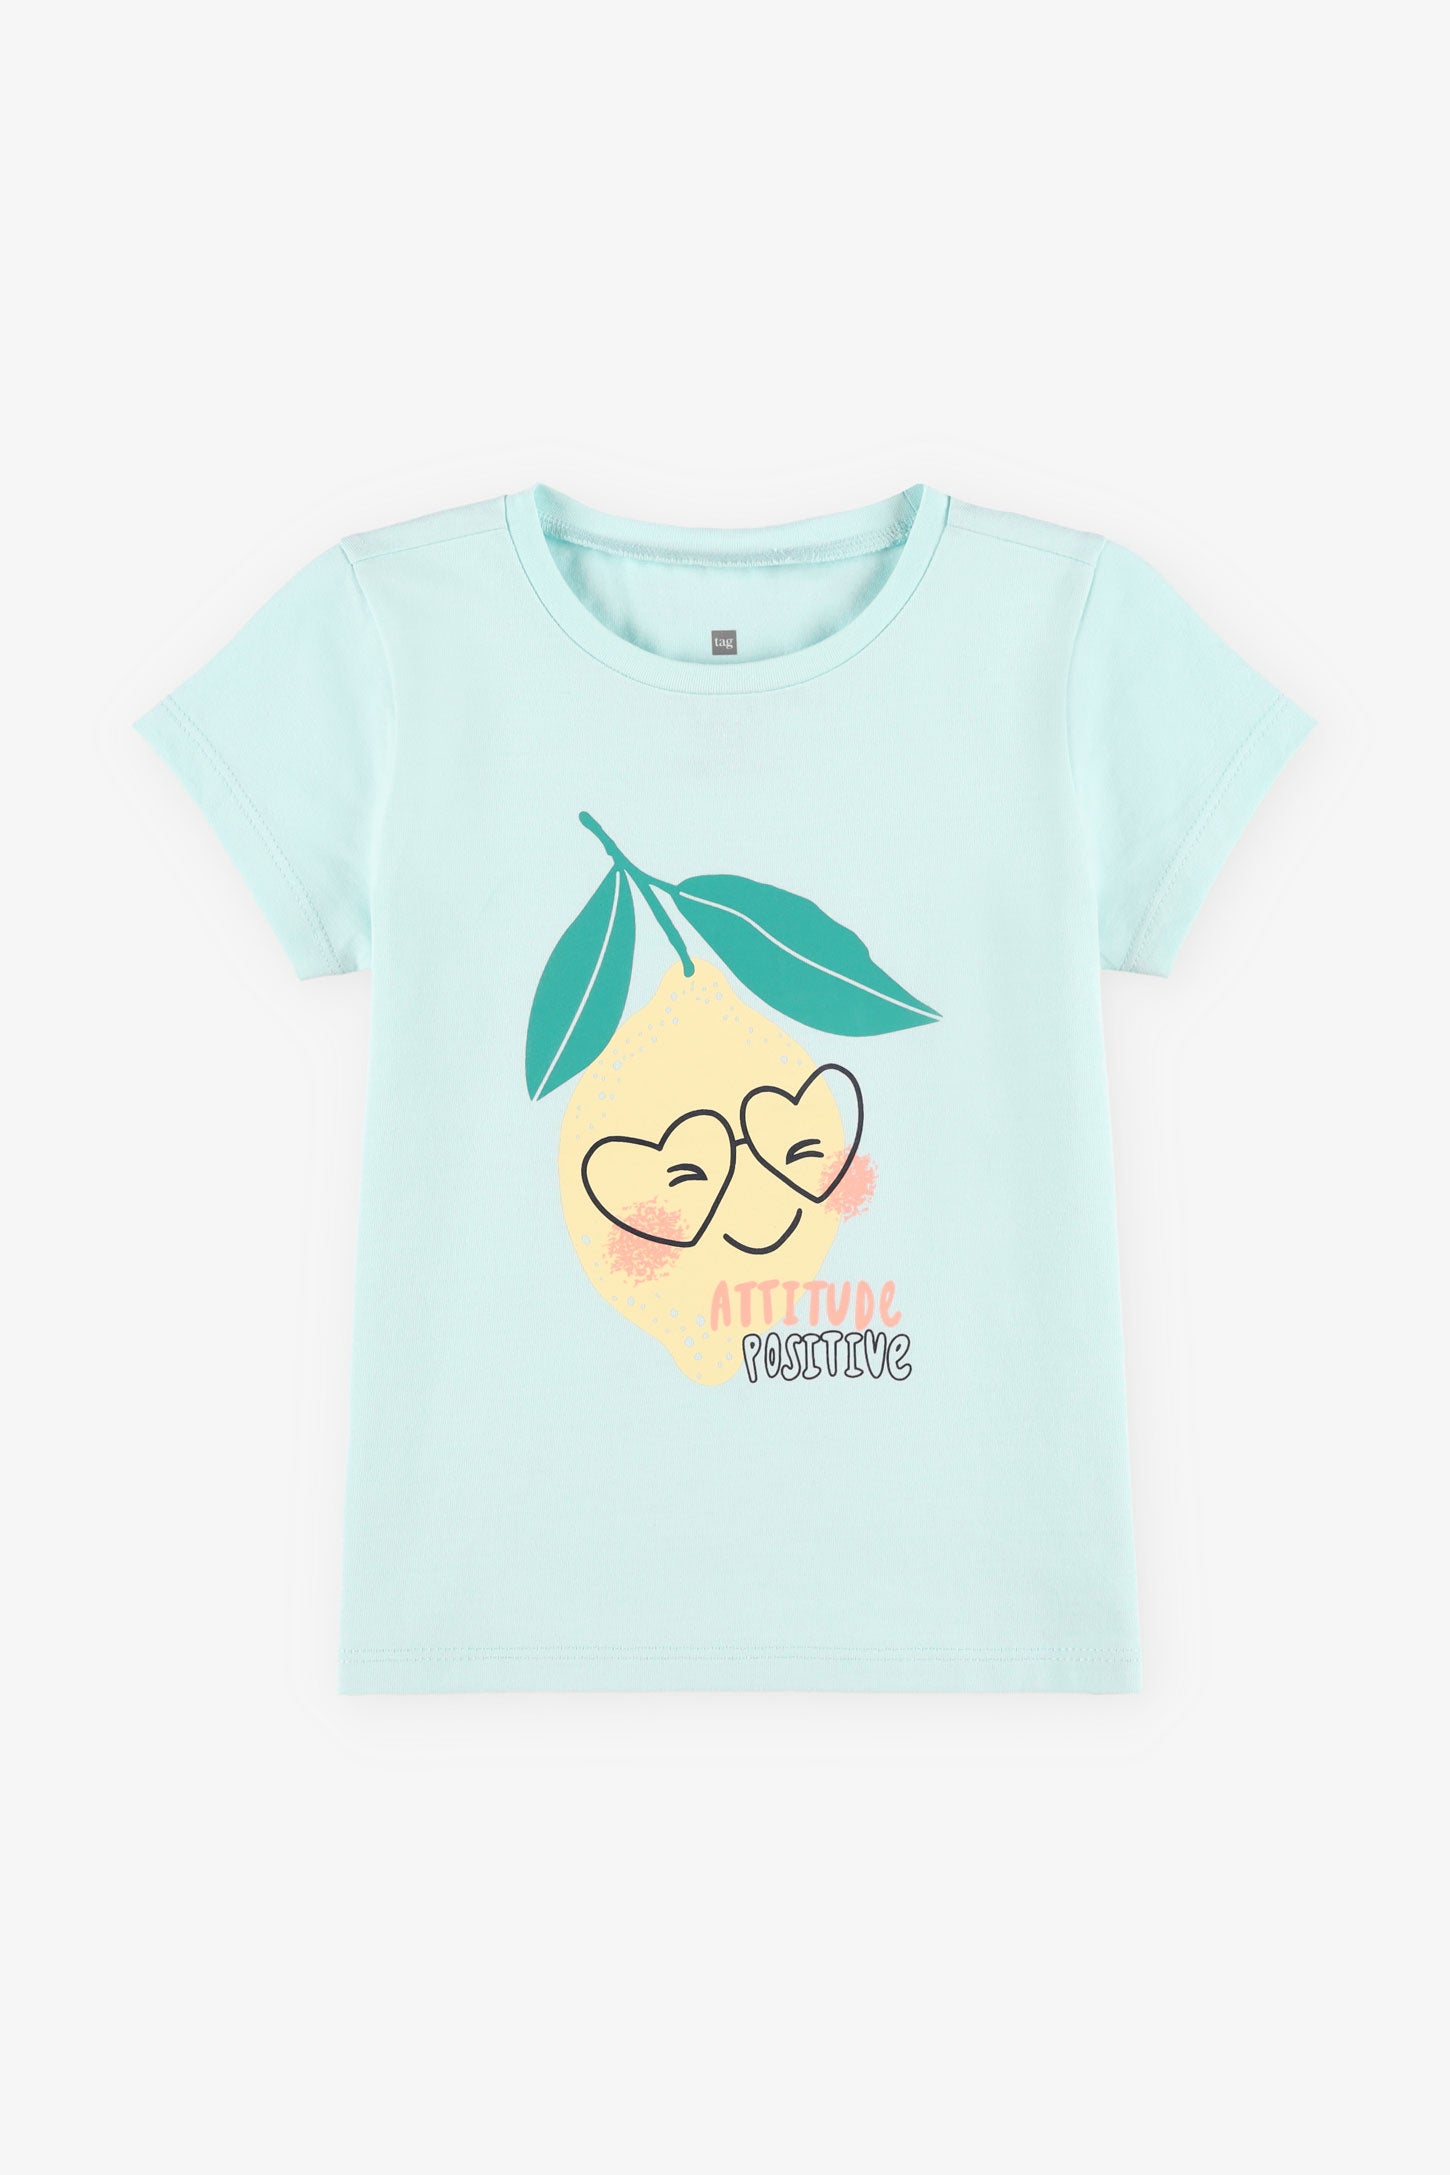 T-shirt rond imprimé coton, 2/15$ - Bébé fille && BLEU PALE